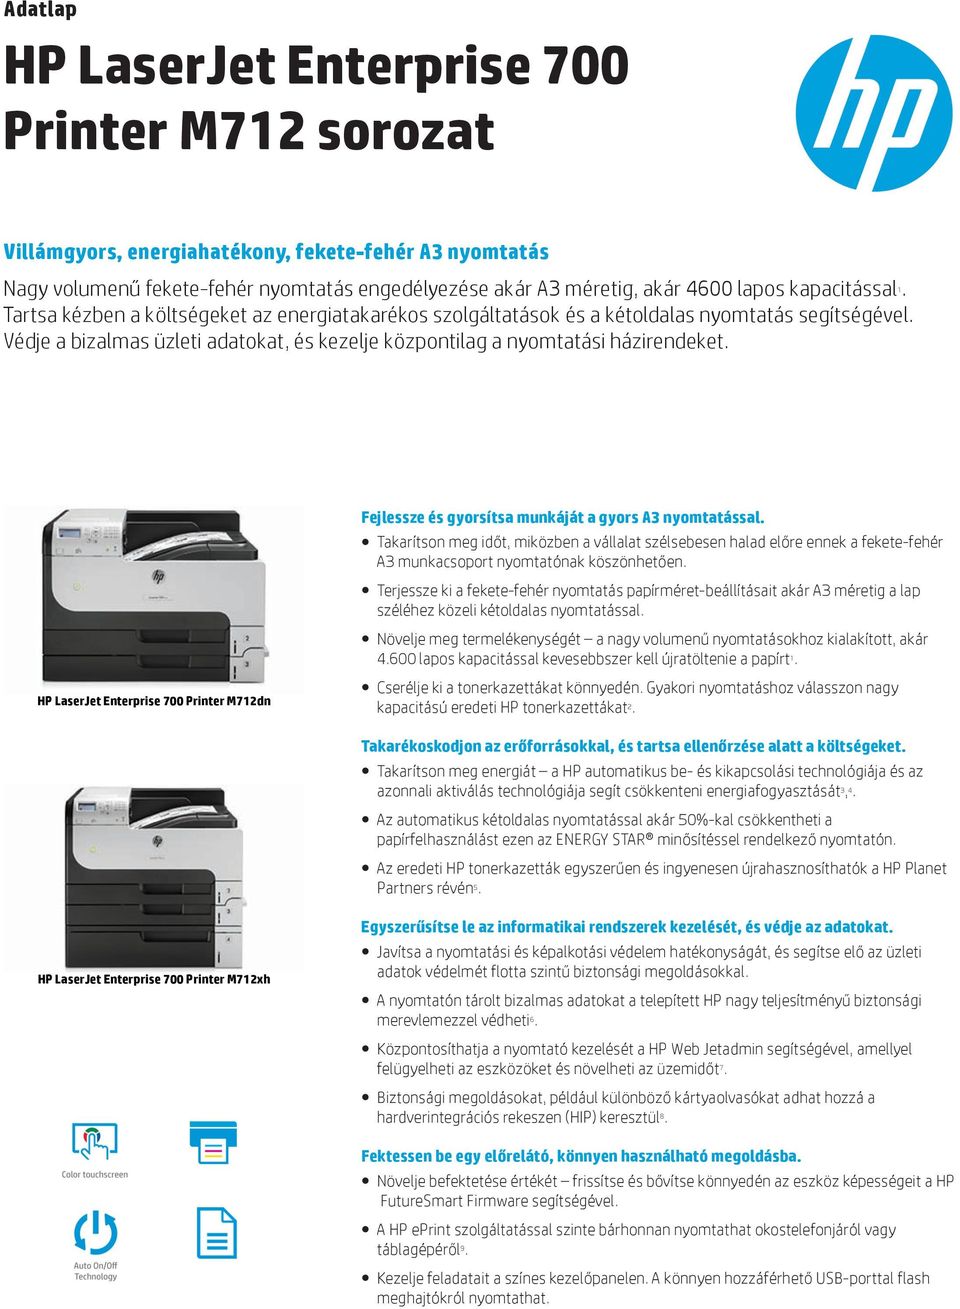 Védje a bizalmas üzleti adatokat, és kezelje központilag a nyomtatási házirendeket. HP LaserJet Enterprise 700 Printer M712dn Fejlessze és gyorsítsa munkáját a gyors A3 nyomtatással.